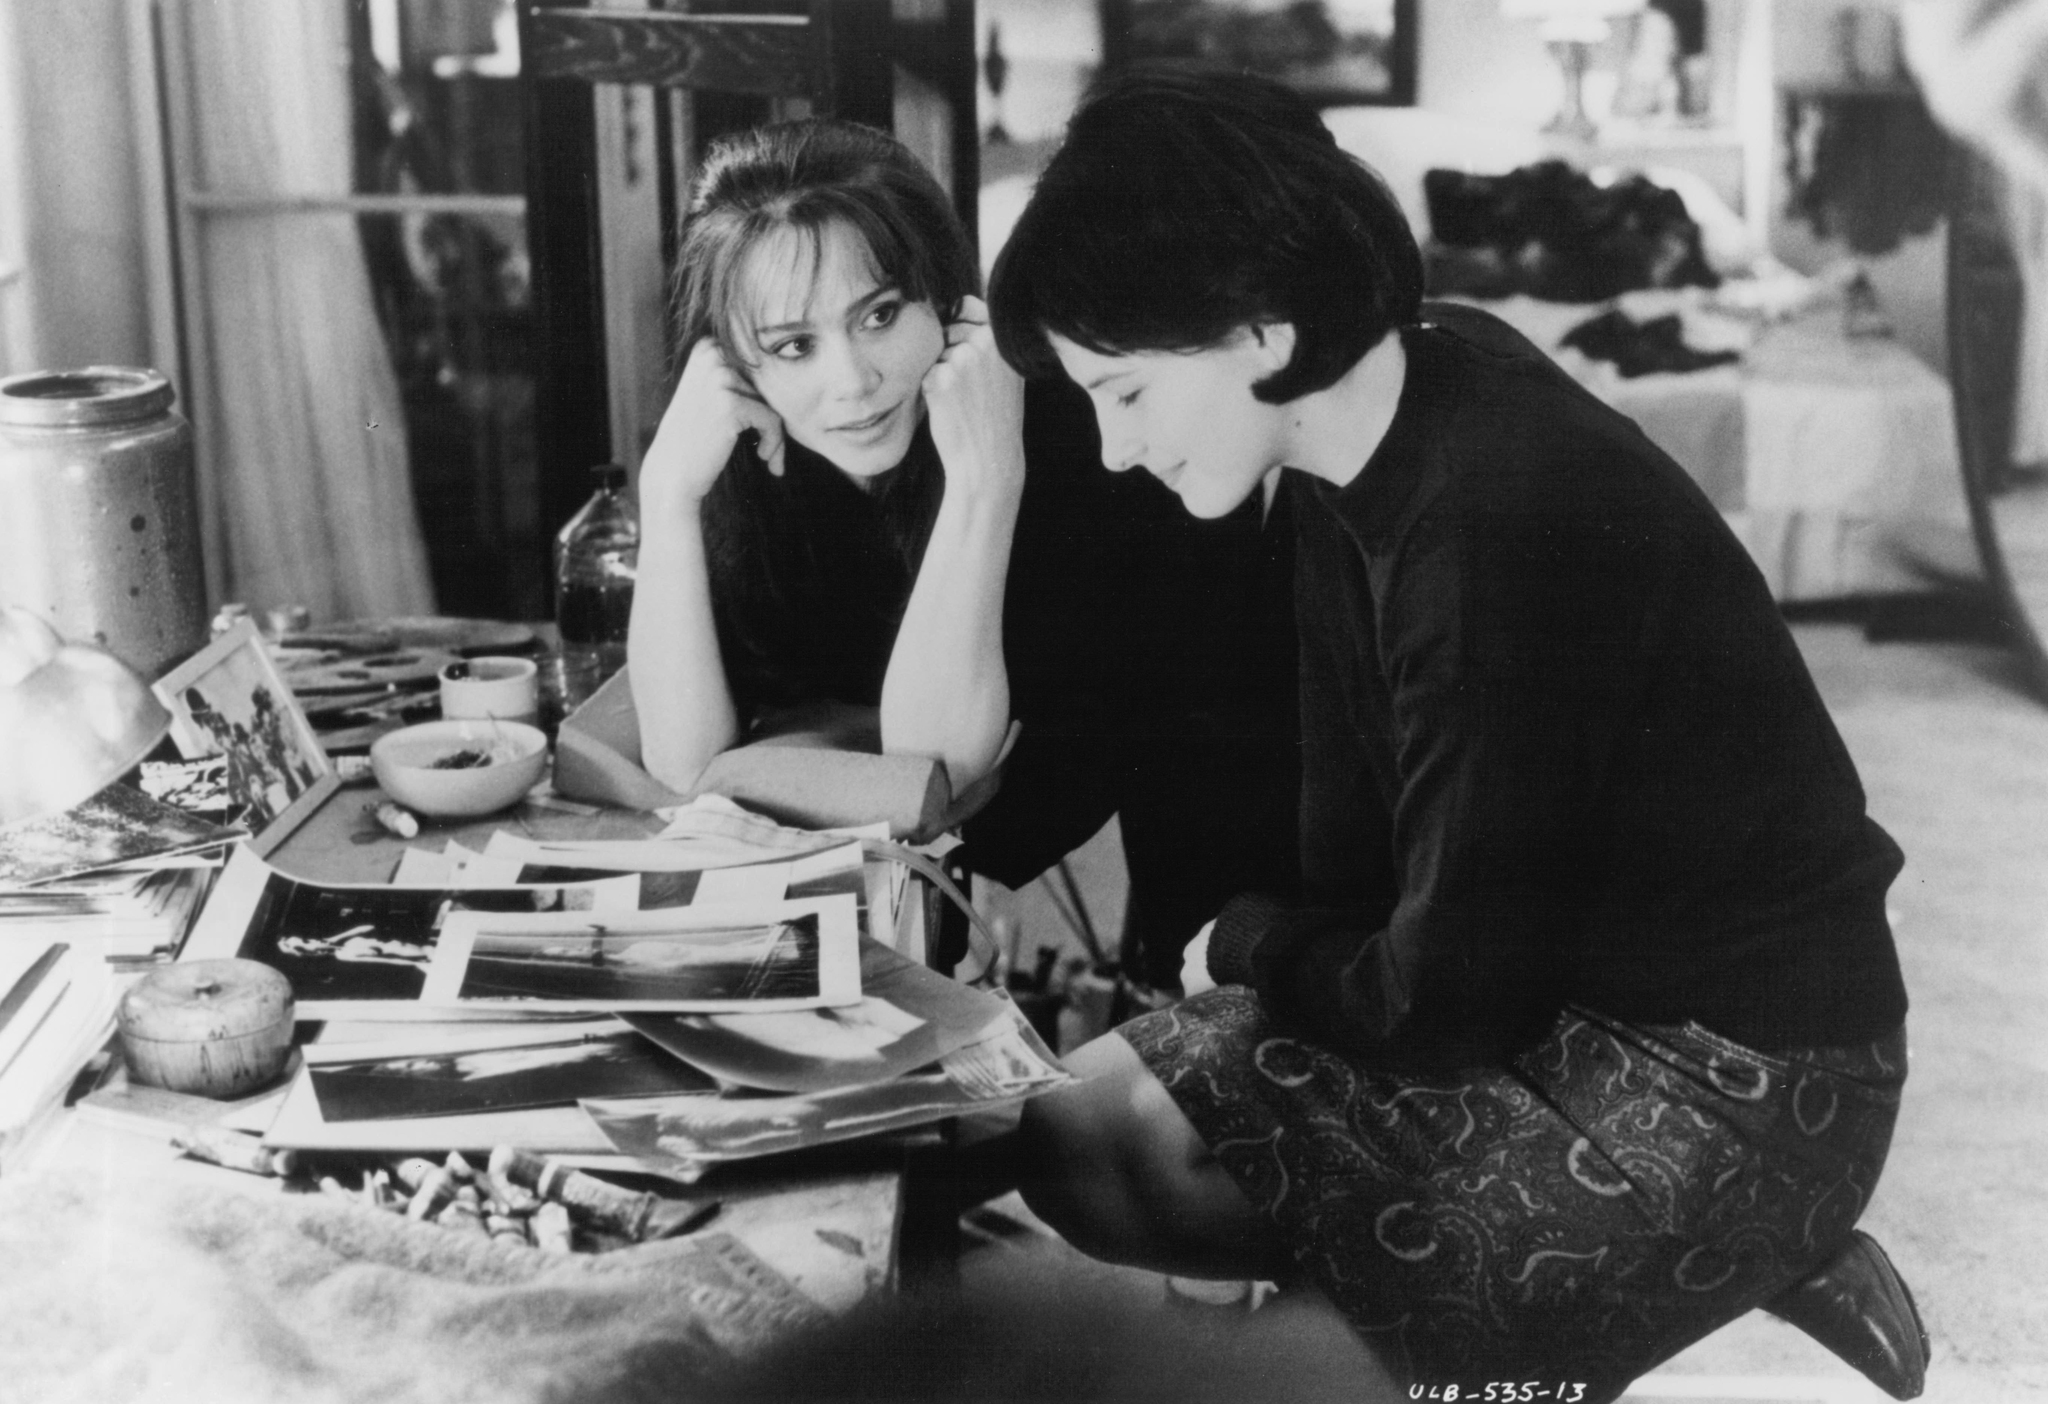 Still of Juliette Binoche and Lena Olin in The Unbearable Lightness of Being (1988)